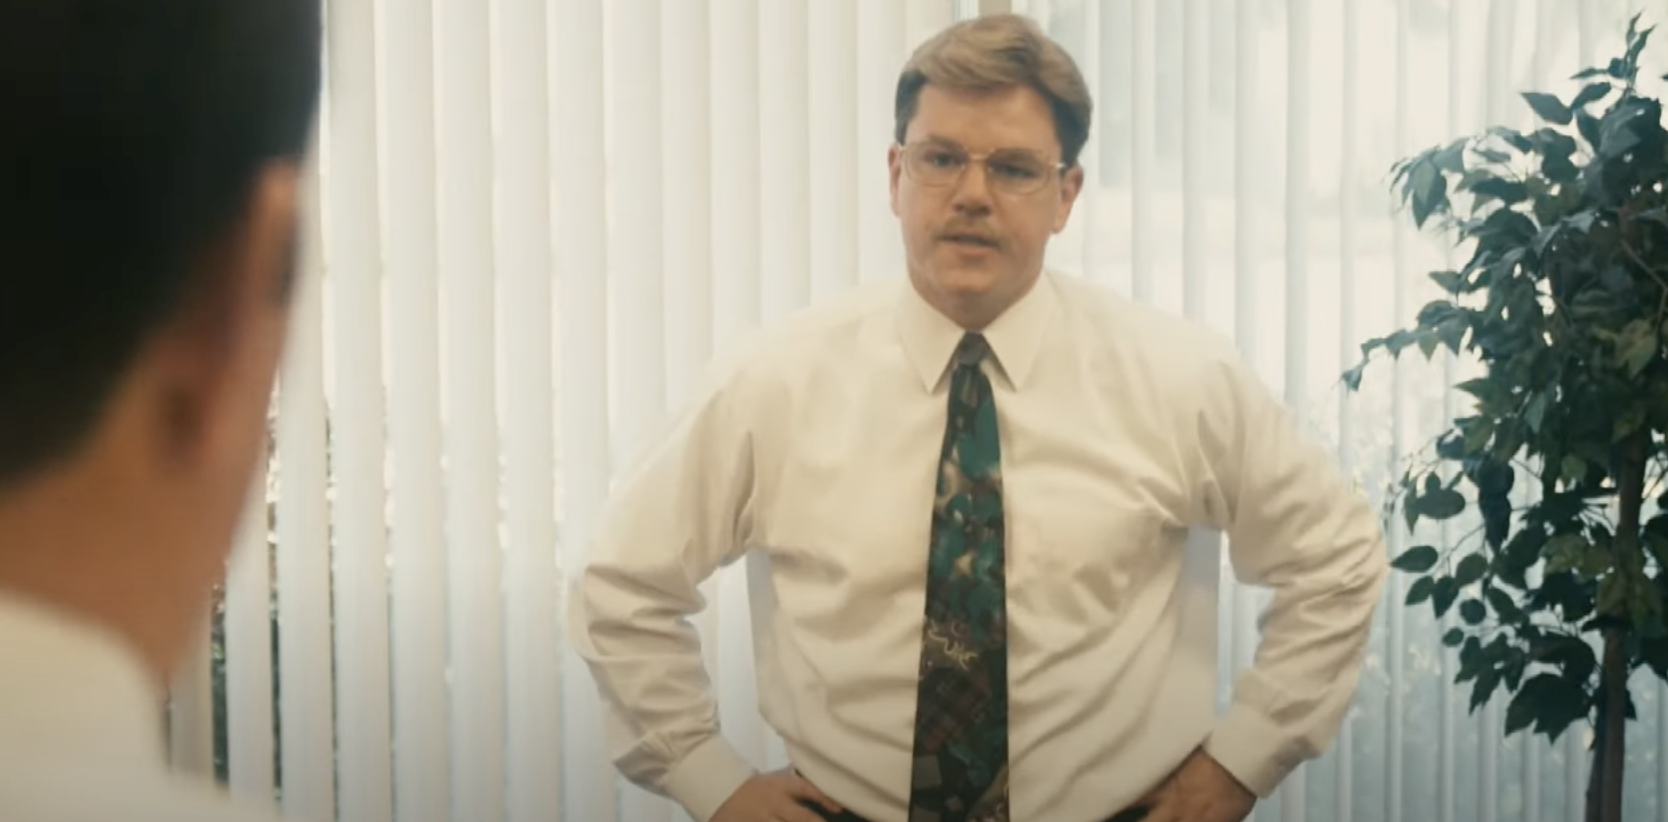 Matt Damon with a tie, glasses, and mustache